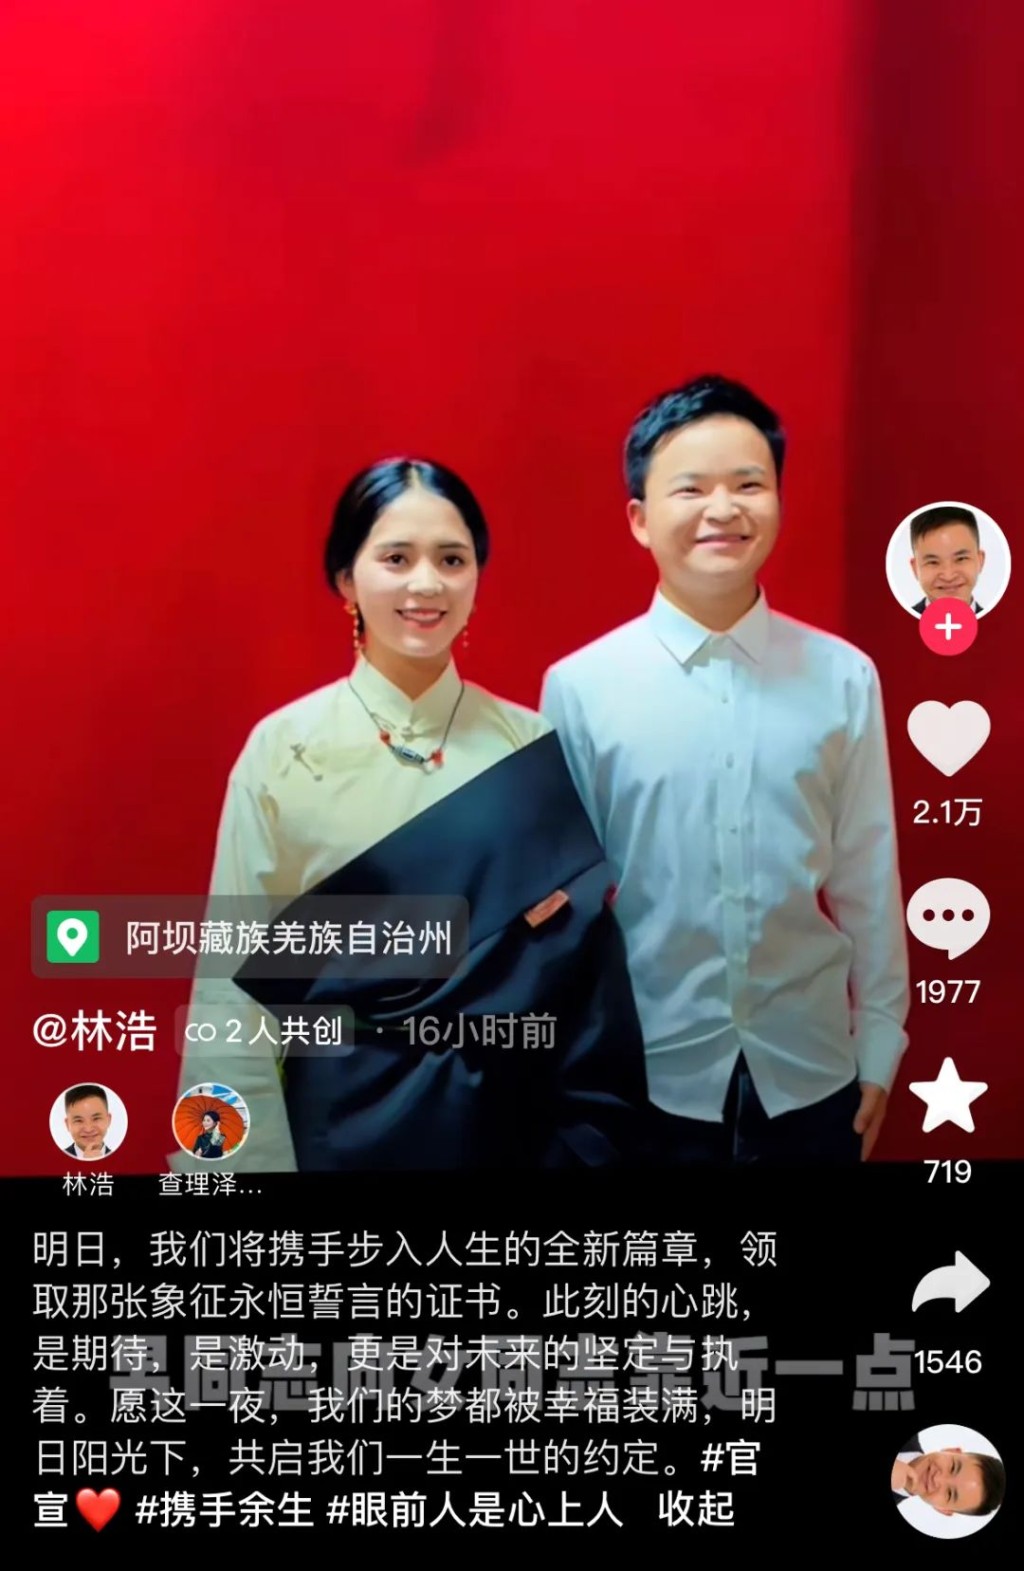 汶川「抗震小英雄」林浩宣布結婚。